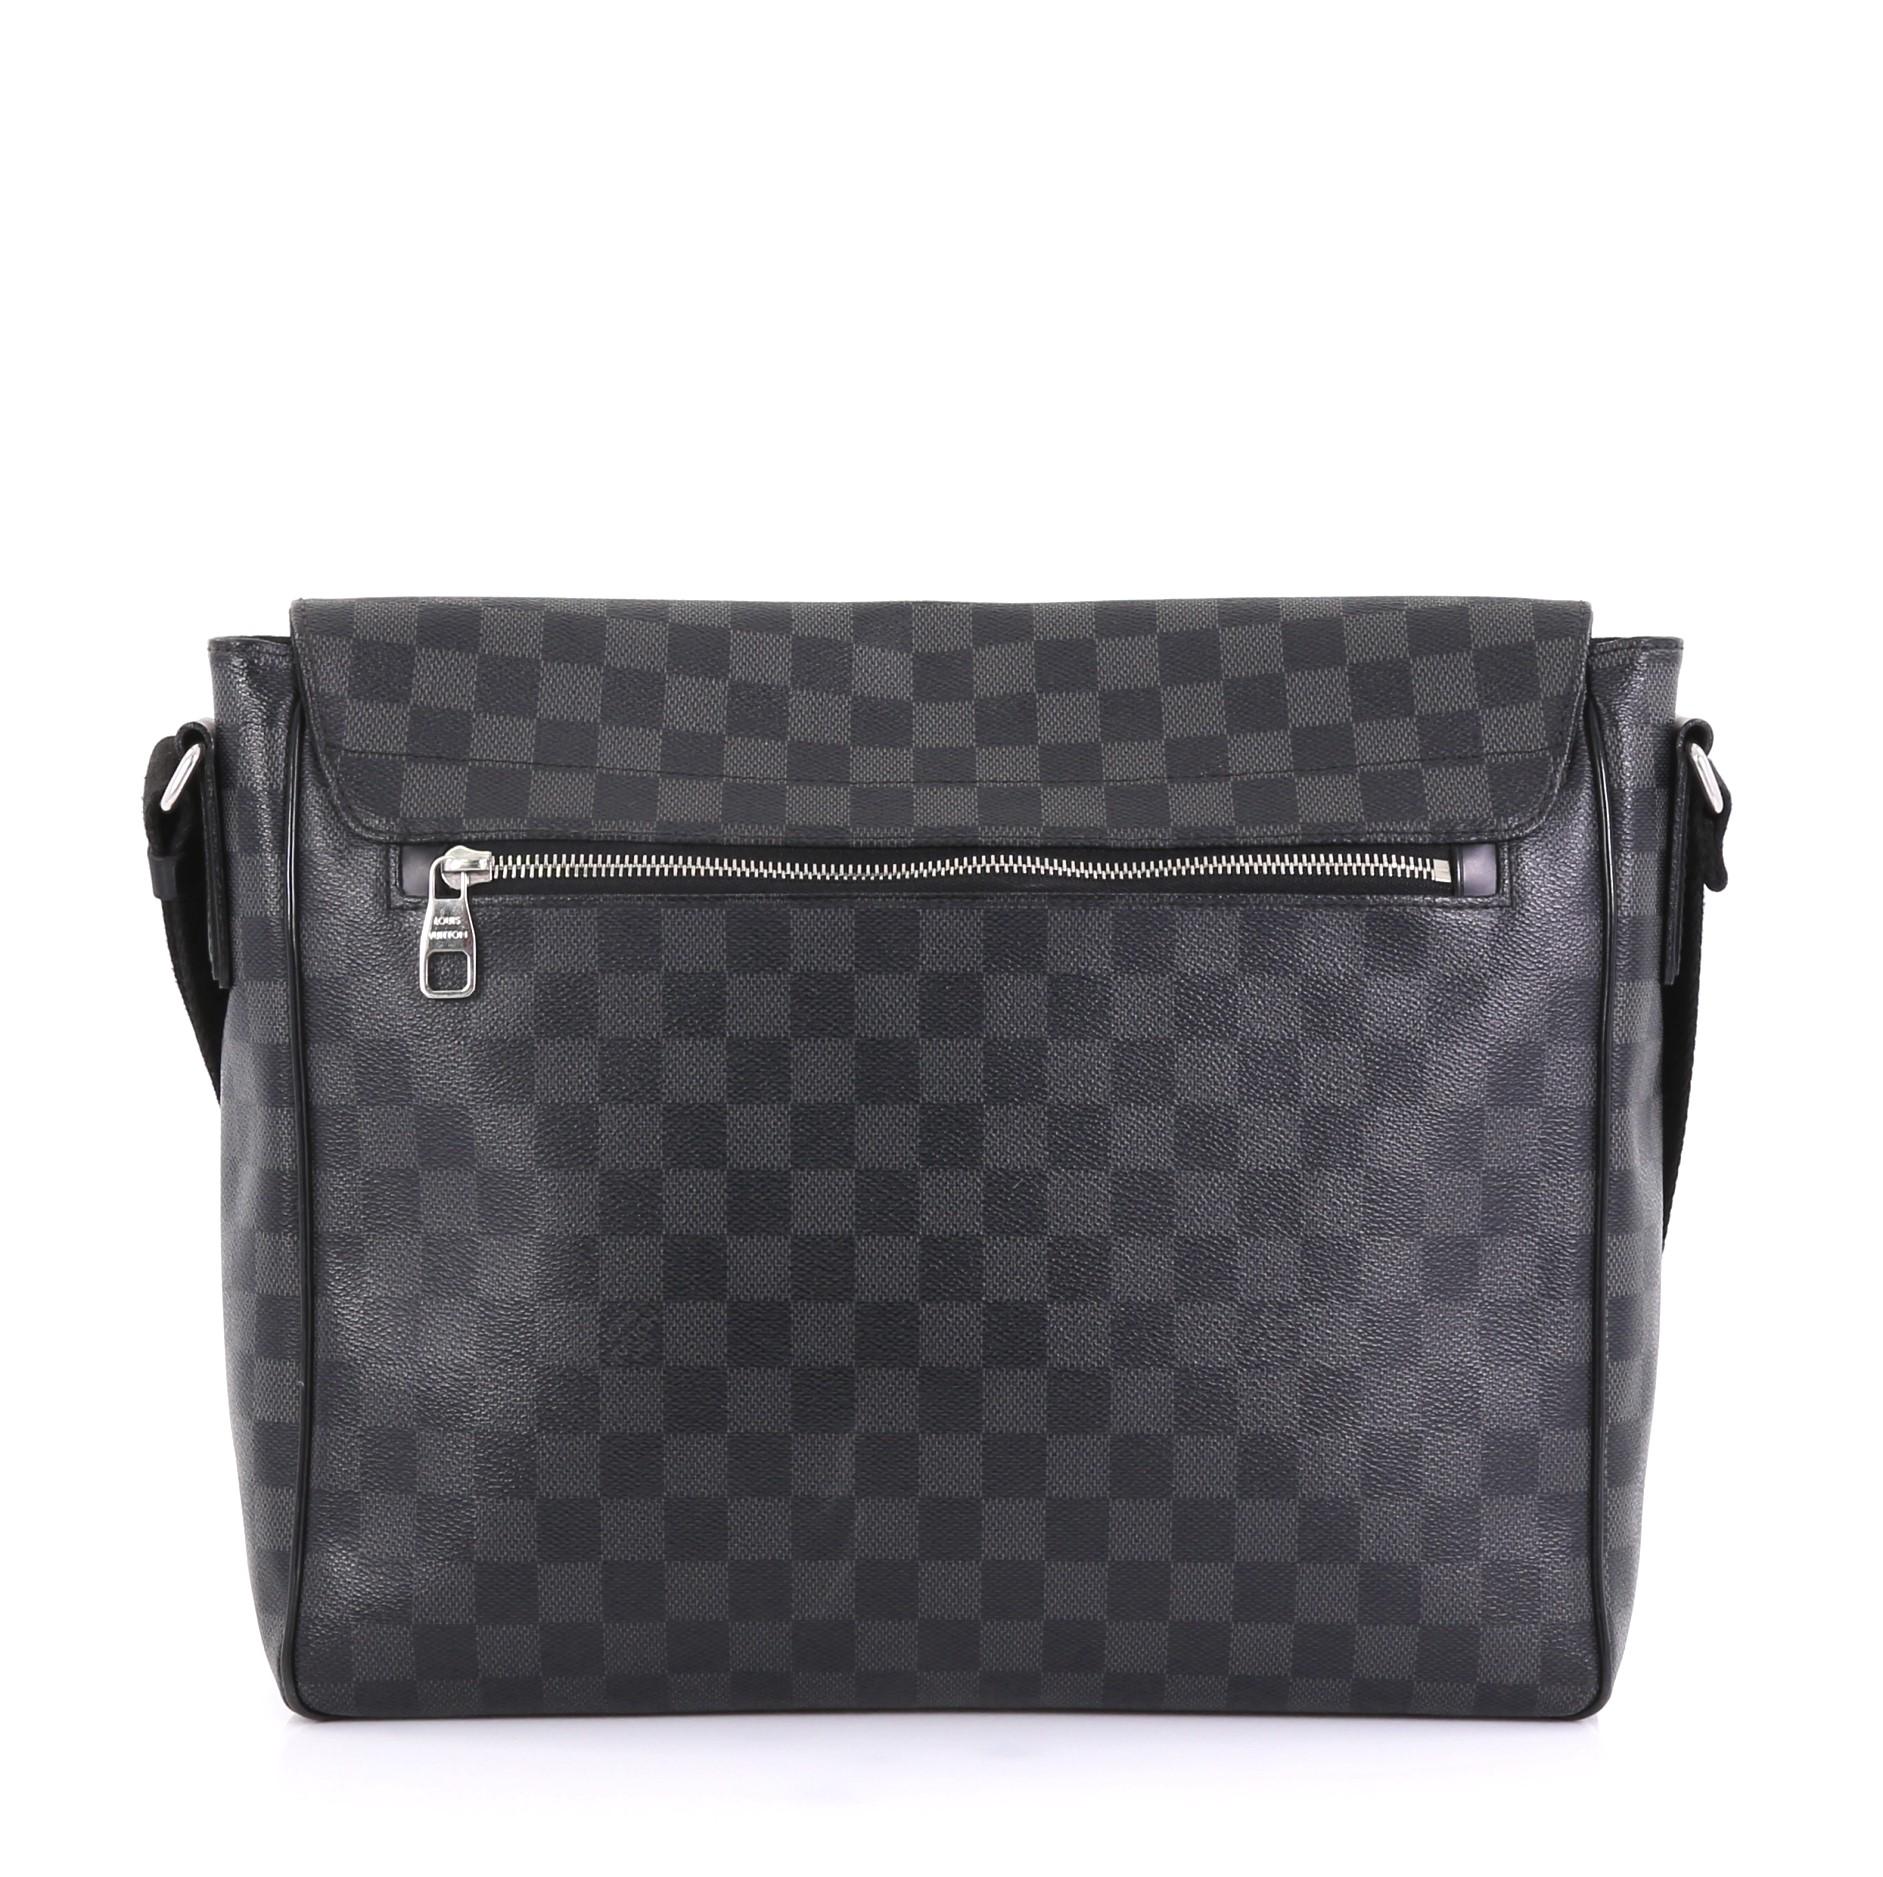 Black Louis Vuitton District Messenger Bag Damier Graphite GM 